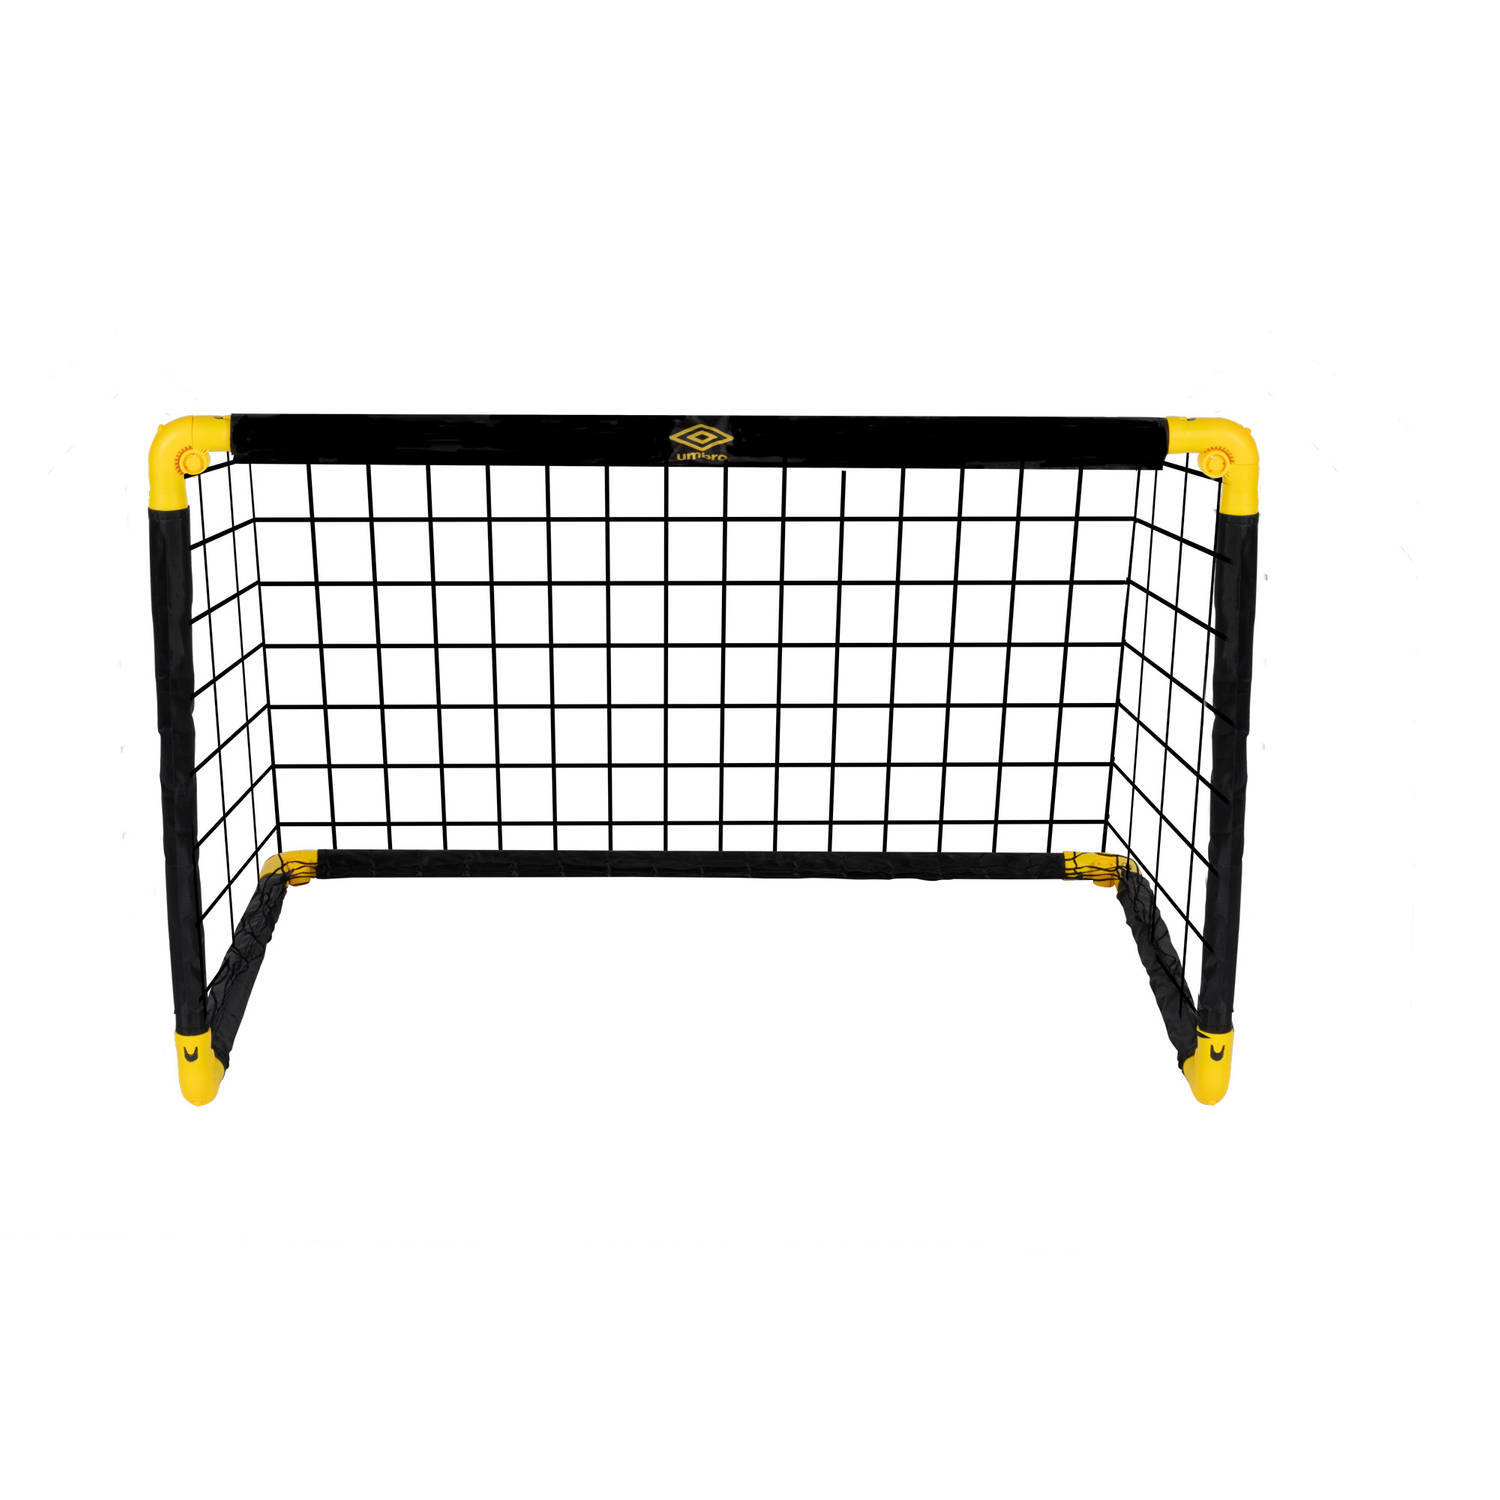 Umbro voetbaldoel - opvouwbare voetbalgoal - 90 x 59 x 61 cm - zwart/geel